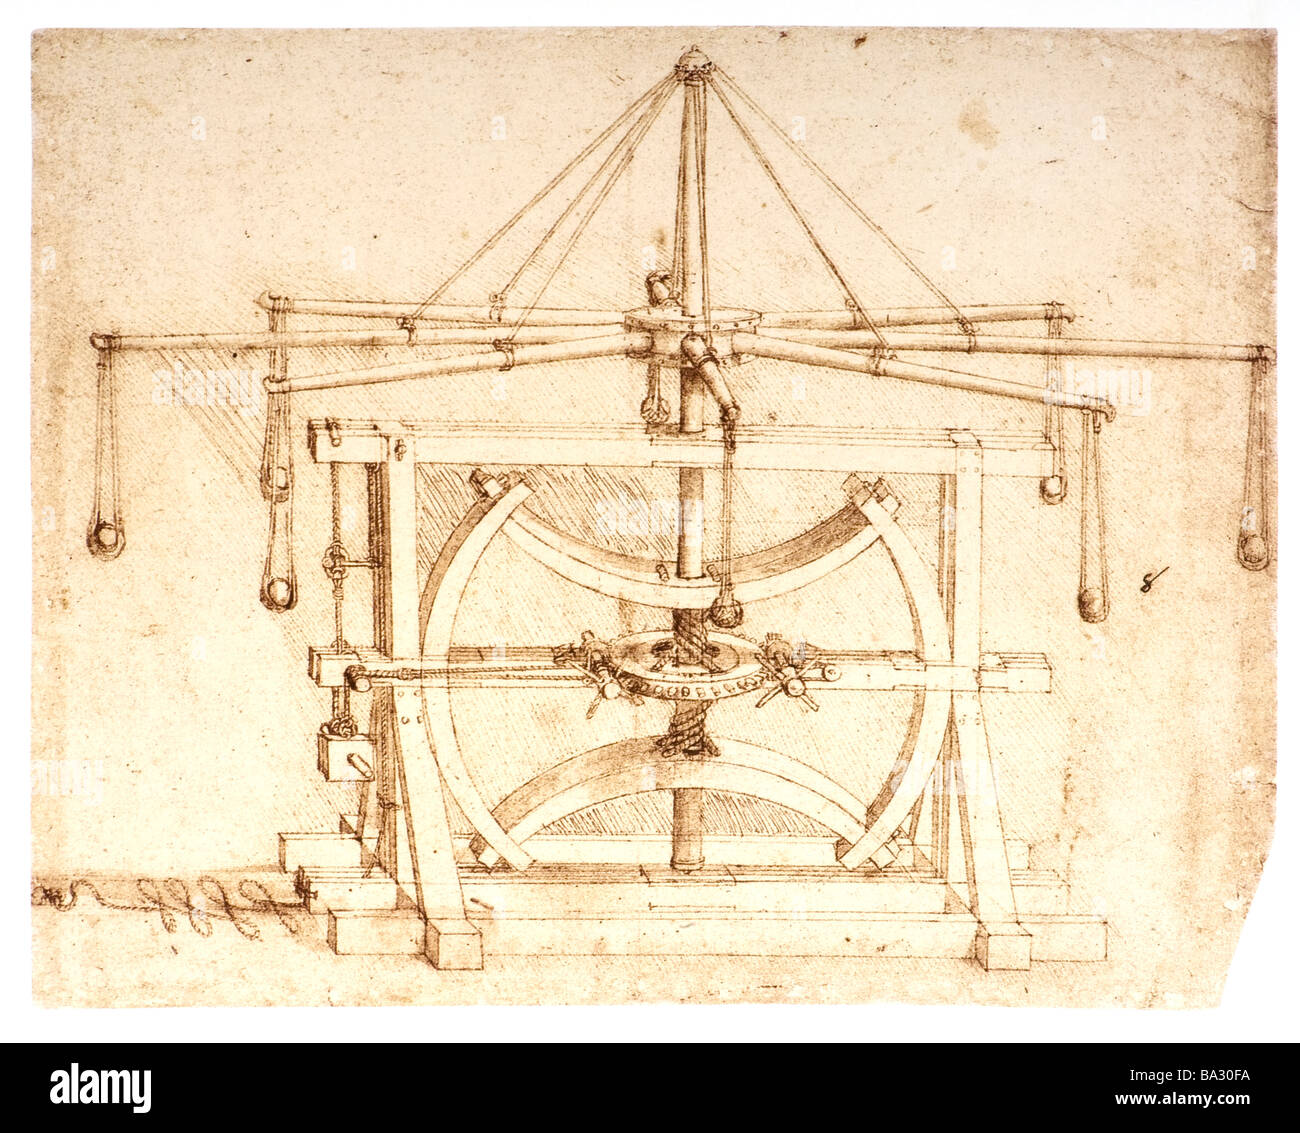 Máquina militar catapulta piedras por Leonardo da Vinci 1485 pluma y tinta Foto de stock